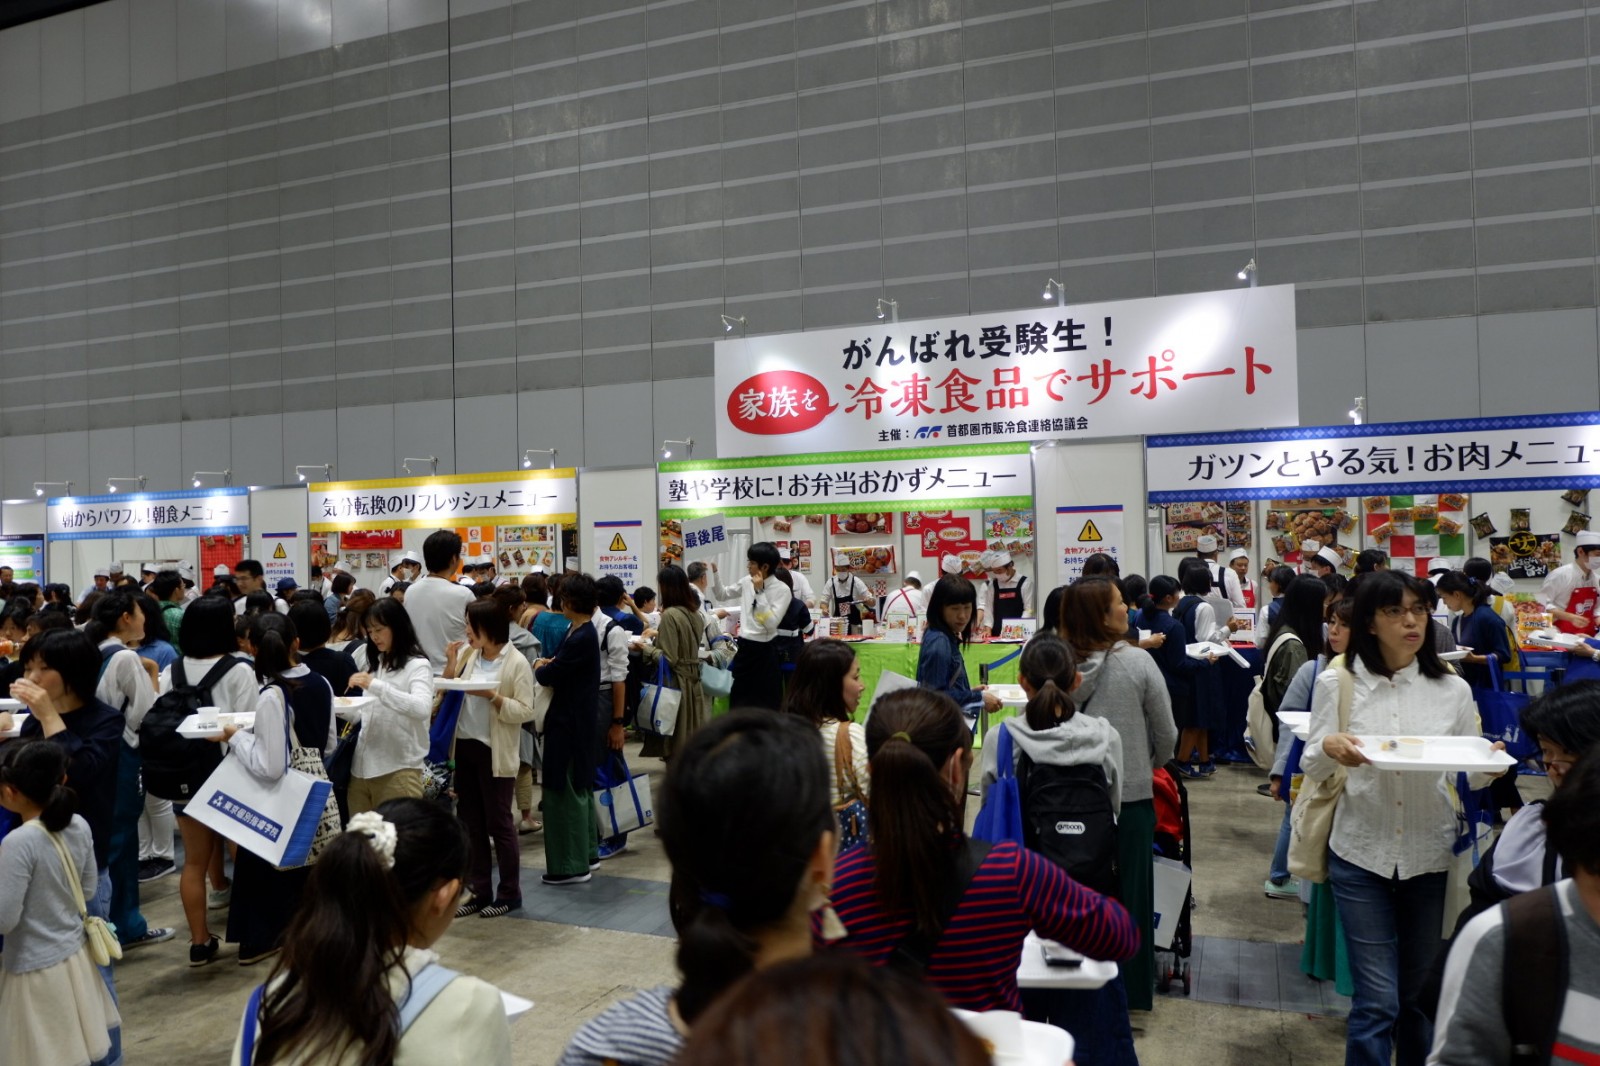 がんばれ受験生！家族を冷凍食品でサポート：神奈川の全公立展2019会場内で試食イベント